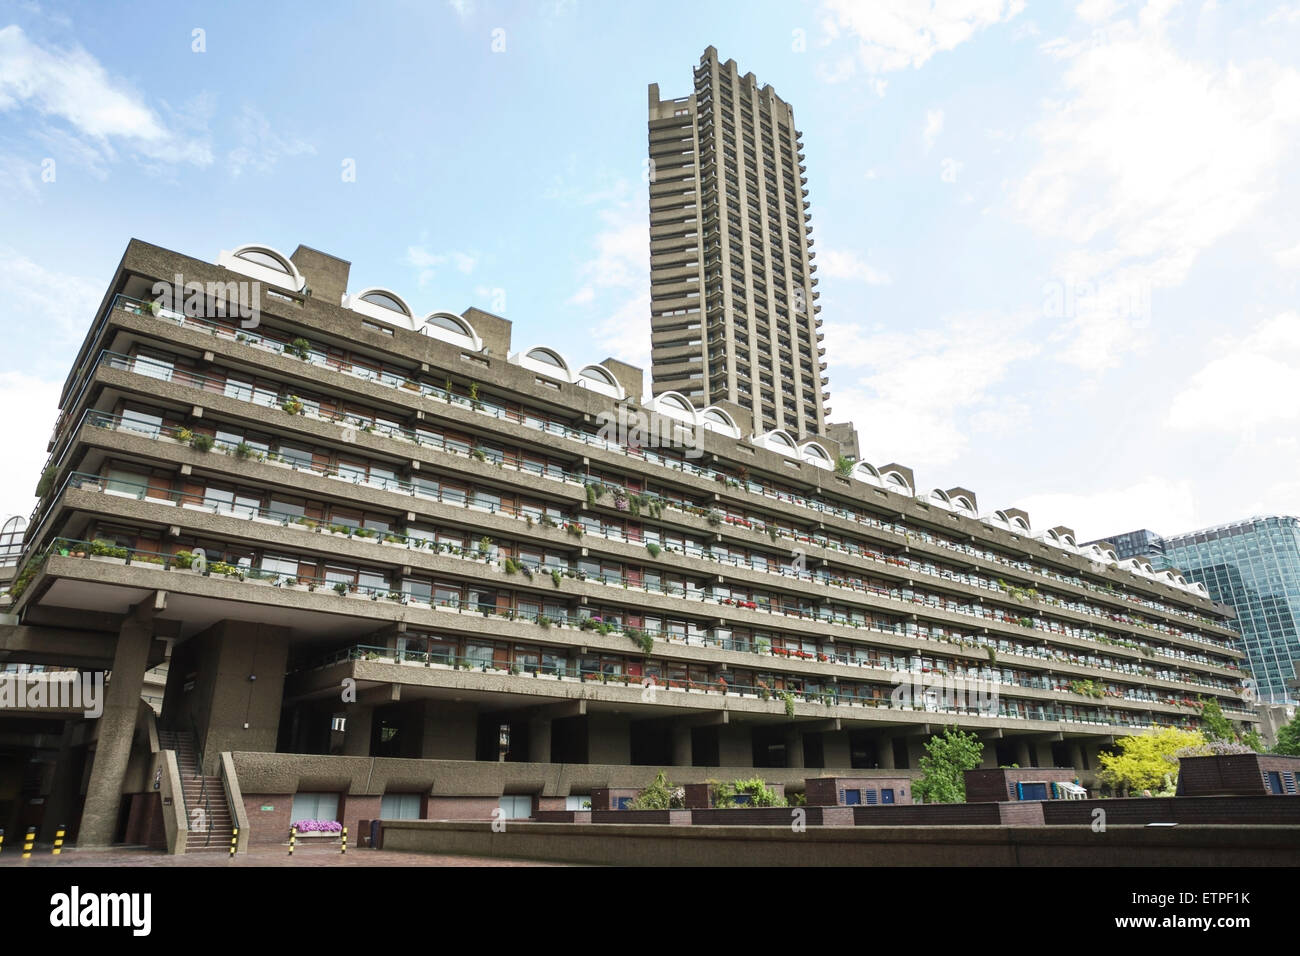 Die Barbican Estate, City of London, England, UK. Beton-Wohnungen der 1960er Jahre & der 1970er Jahre. Stockfoto